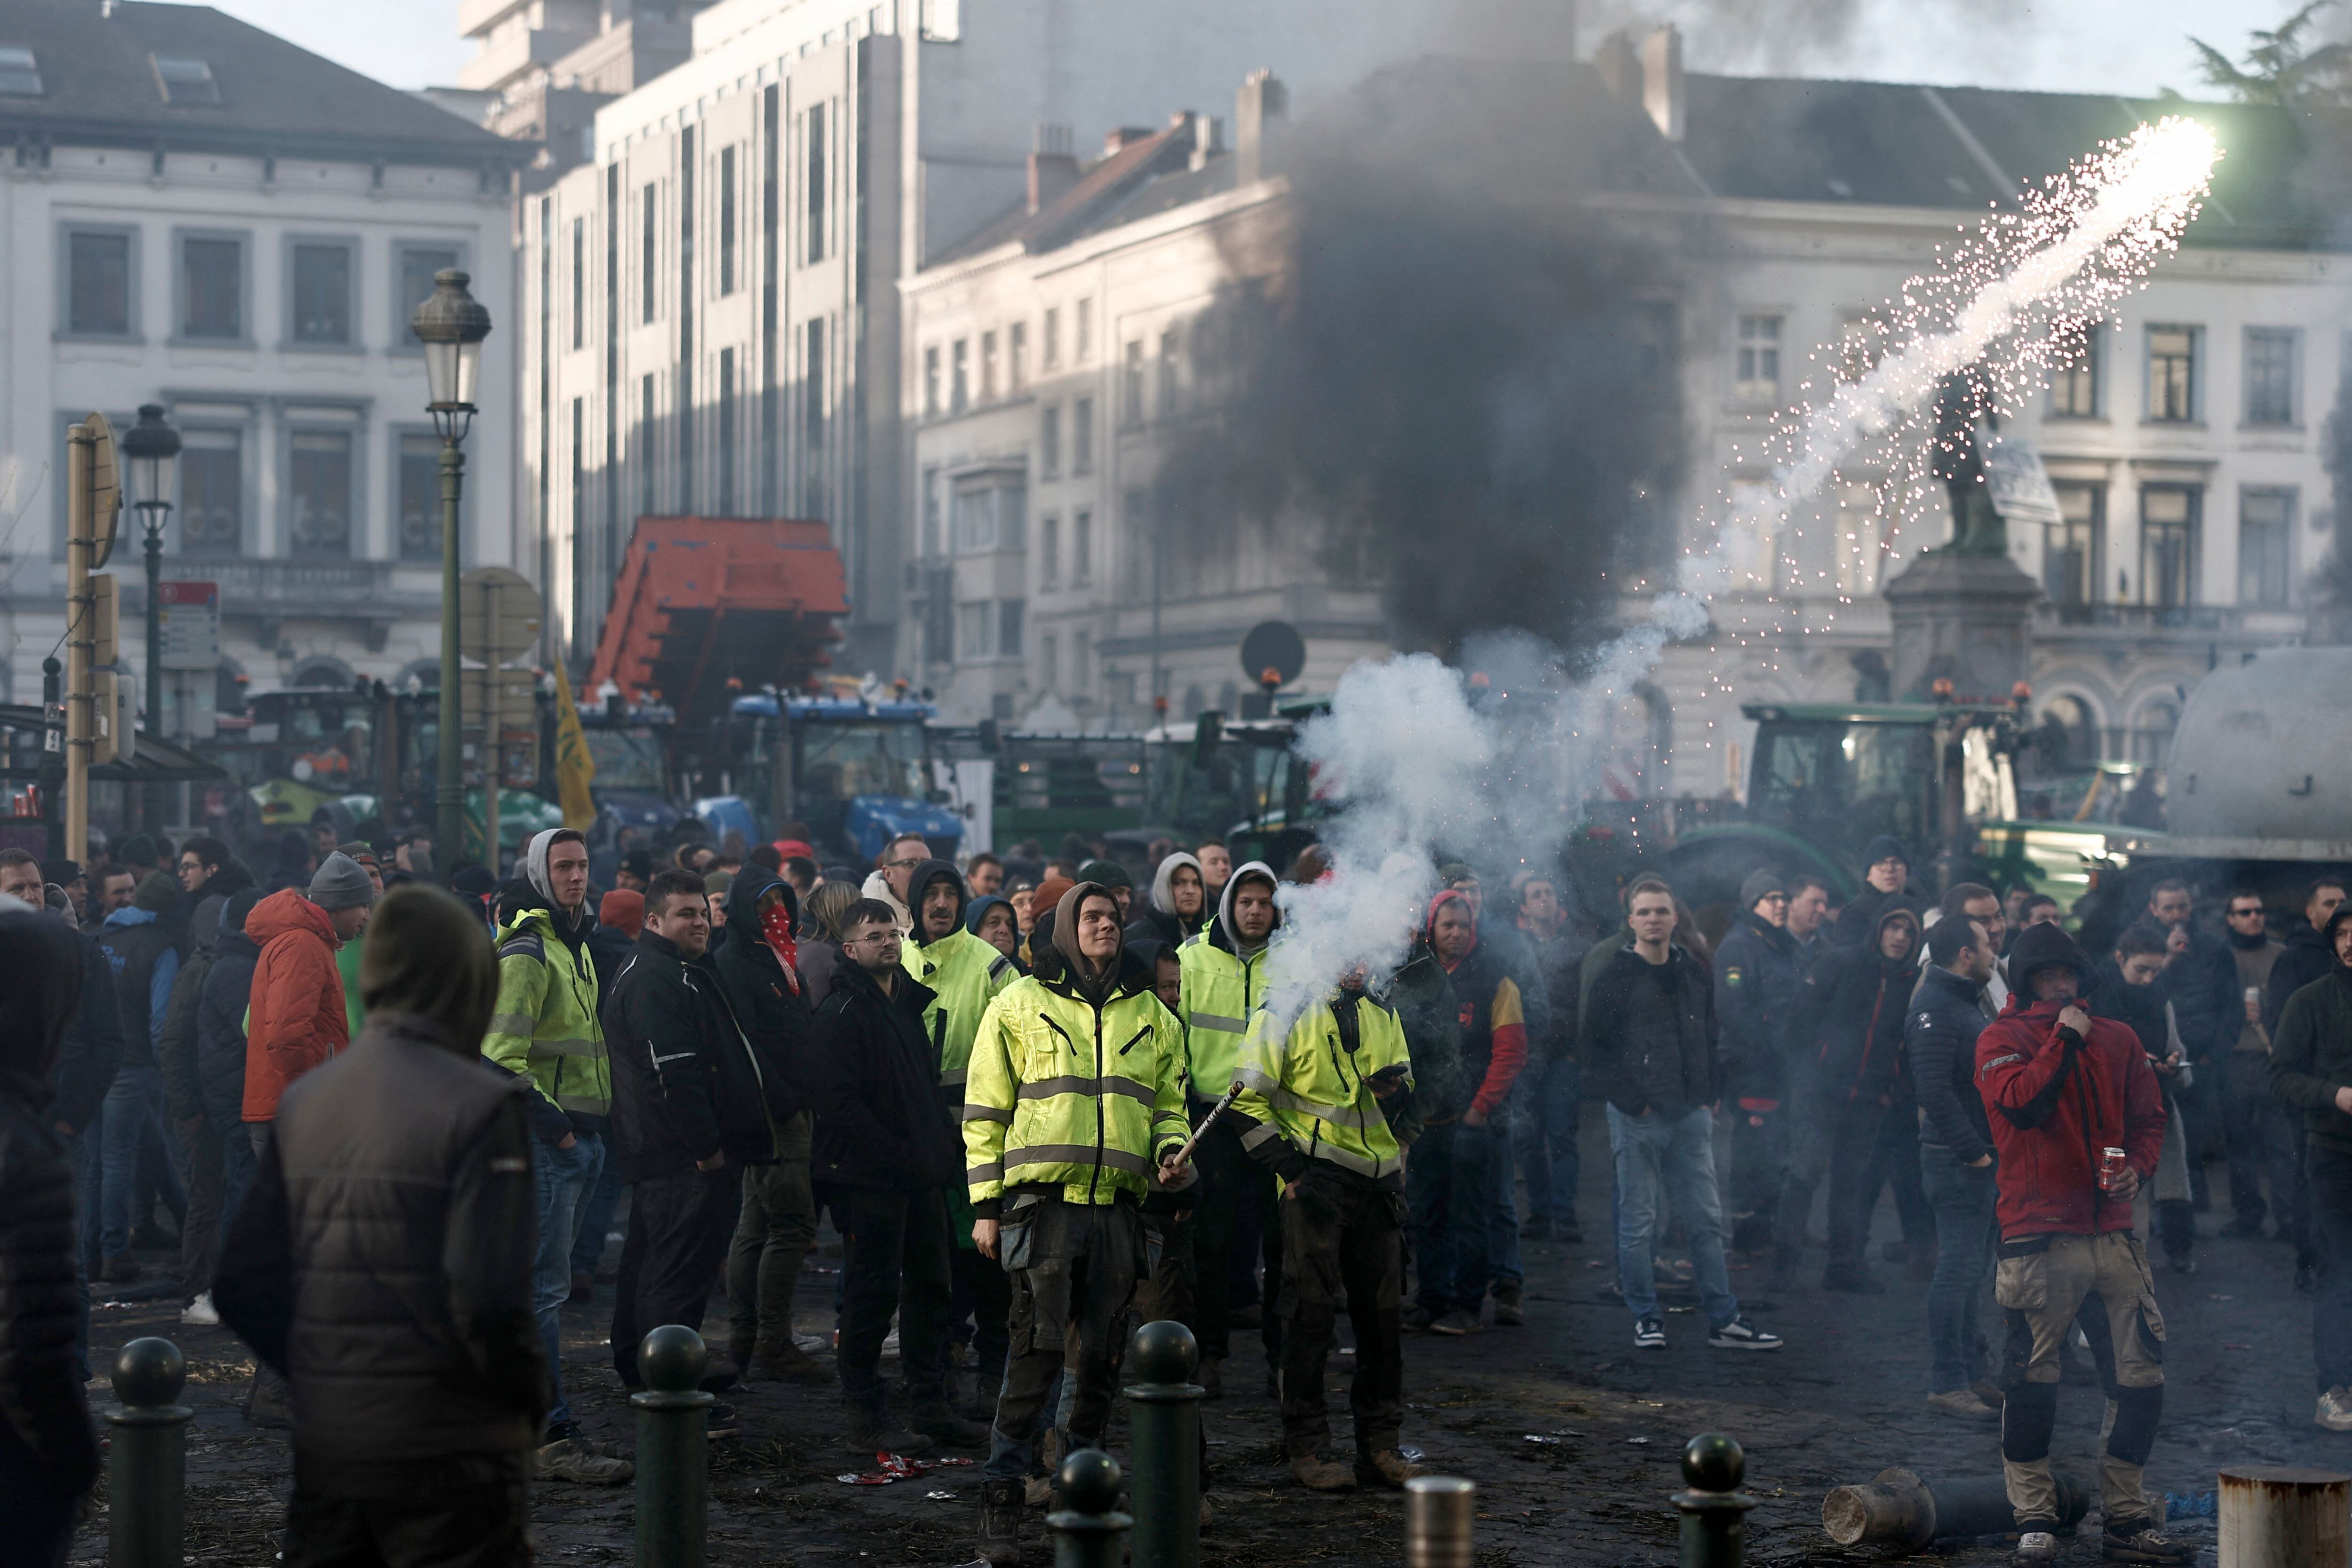 Un manifestante se enfrenta a la policía durante una protesta de agricultores que pide mayores ingresos y protección contra la competencia extranjera, en la Place du Luxemburgo, cerca del edificio del Parlamento Europeo en Bruselas.